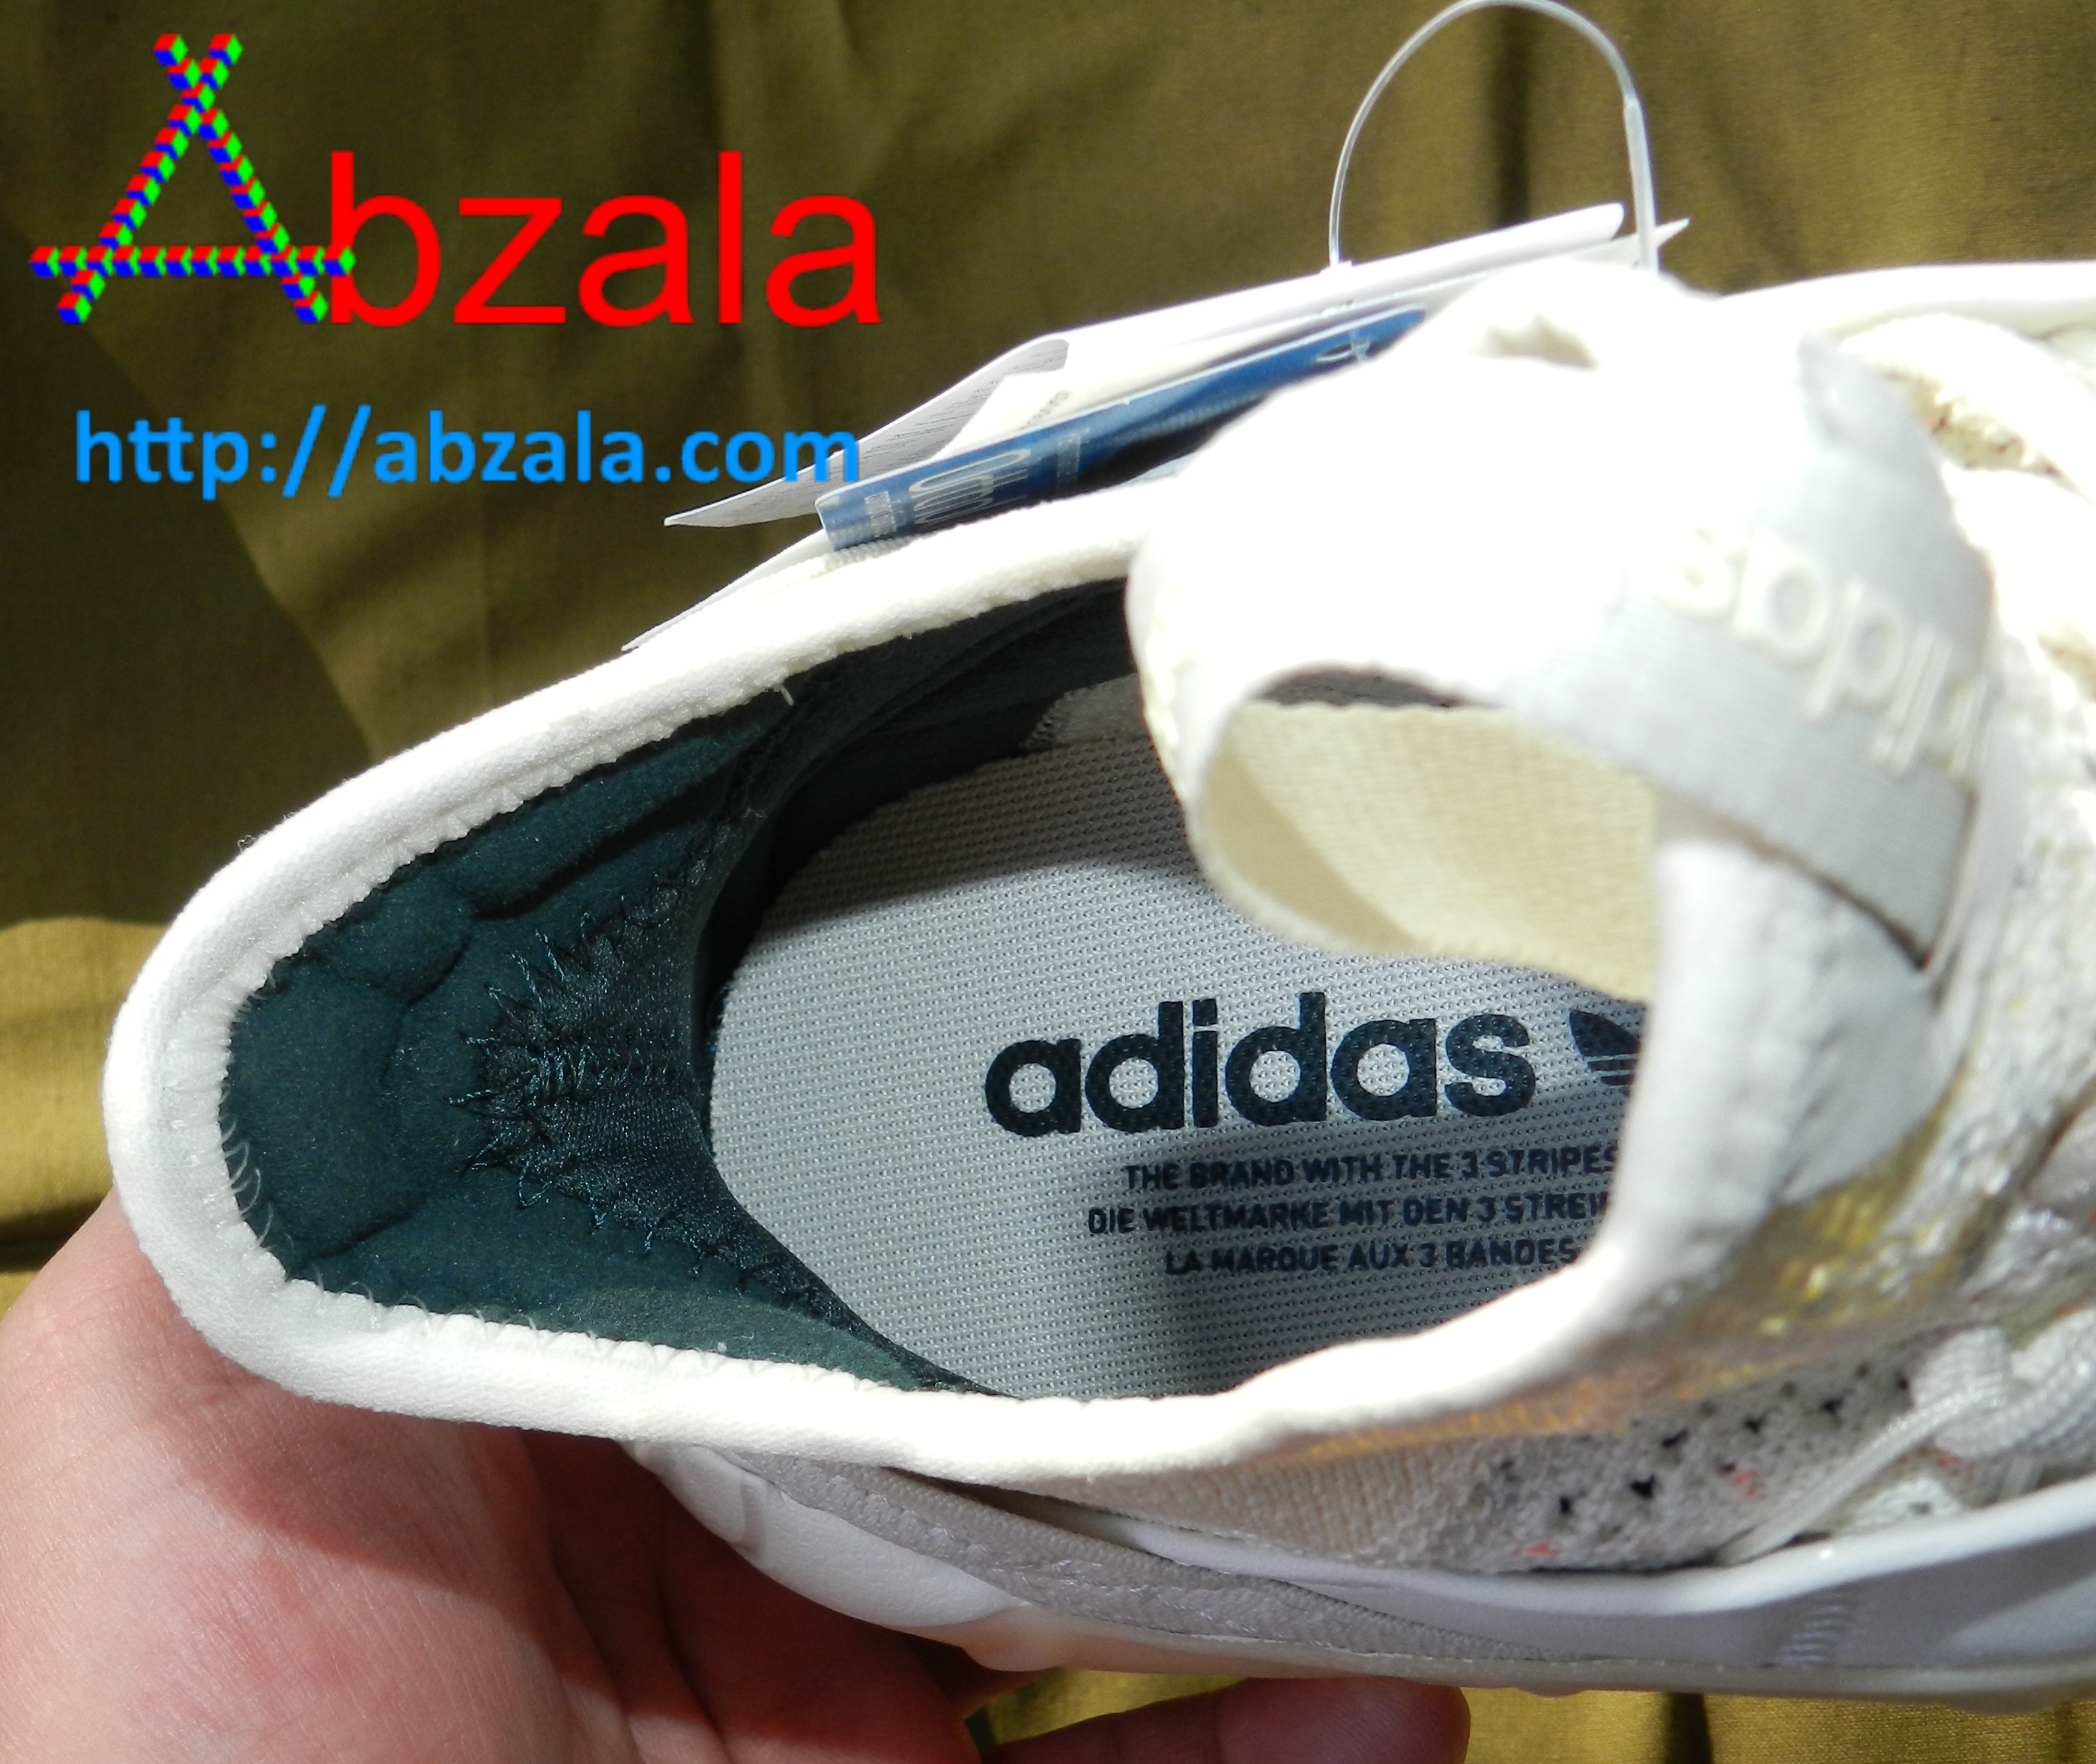 Проверить оригинальность adidas. Как проверить оригинал кроссовок адидас. Проверить оригинальность кроссовок. Как узнать оригинальные кроссовки adidas. Узнать модель кроссовок.